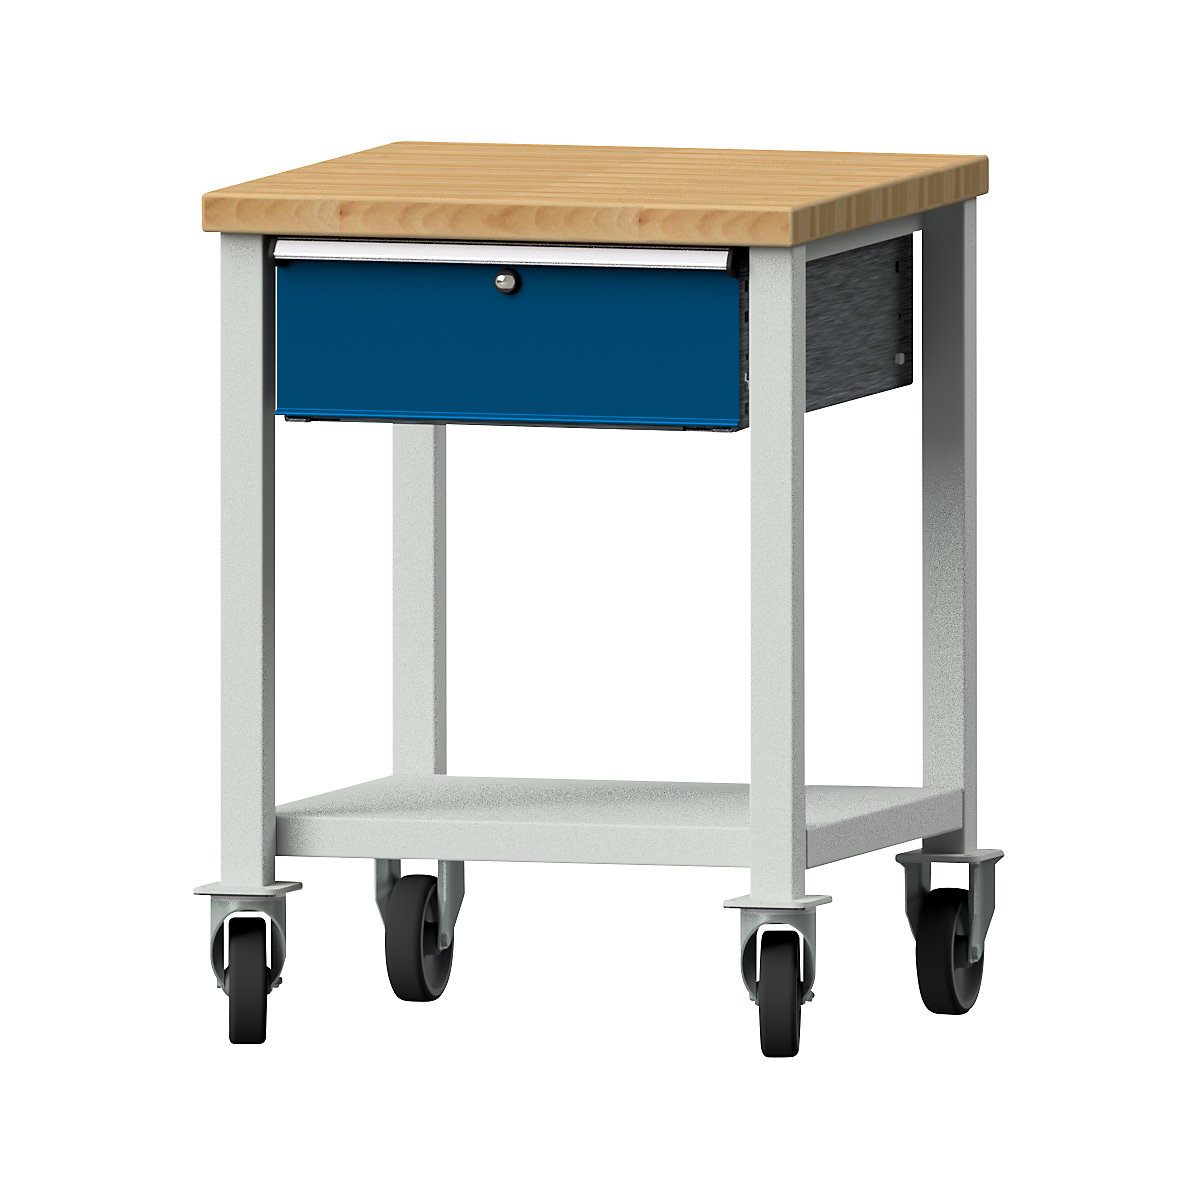 Kompaktowy stół warsztatowy – ANKE, szer. x głęb. 605 x 650 mm, 1 szuflada, ruchomy-6